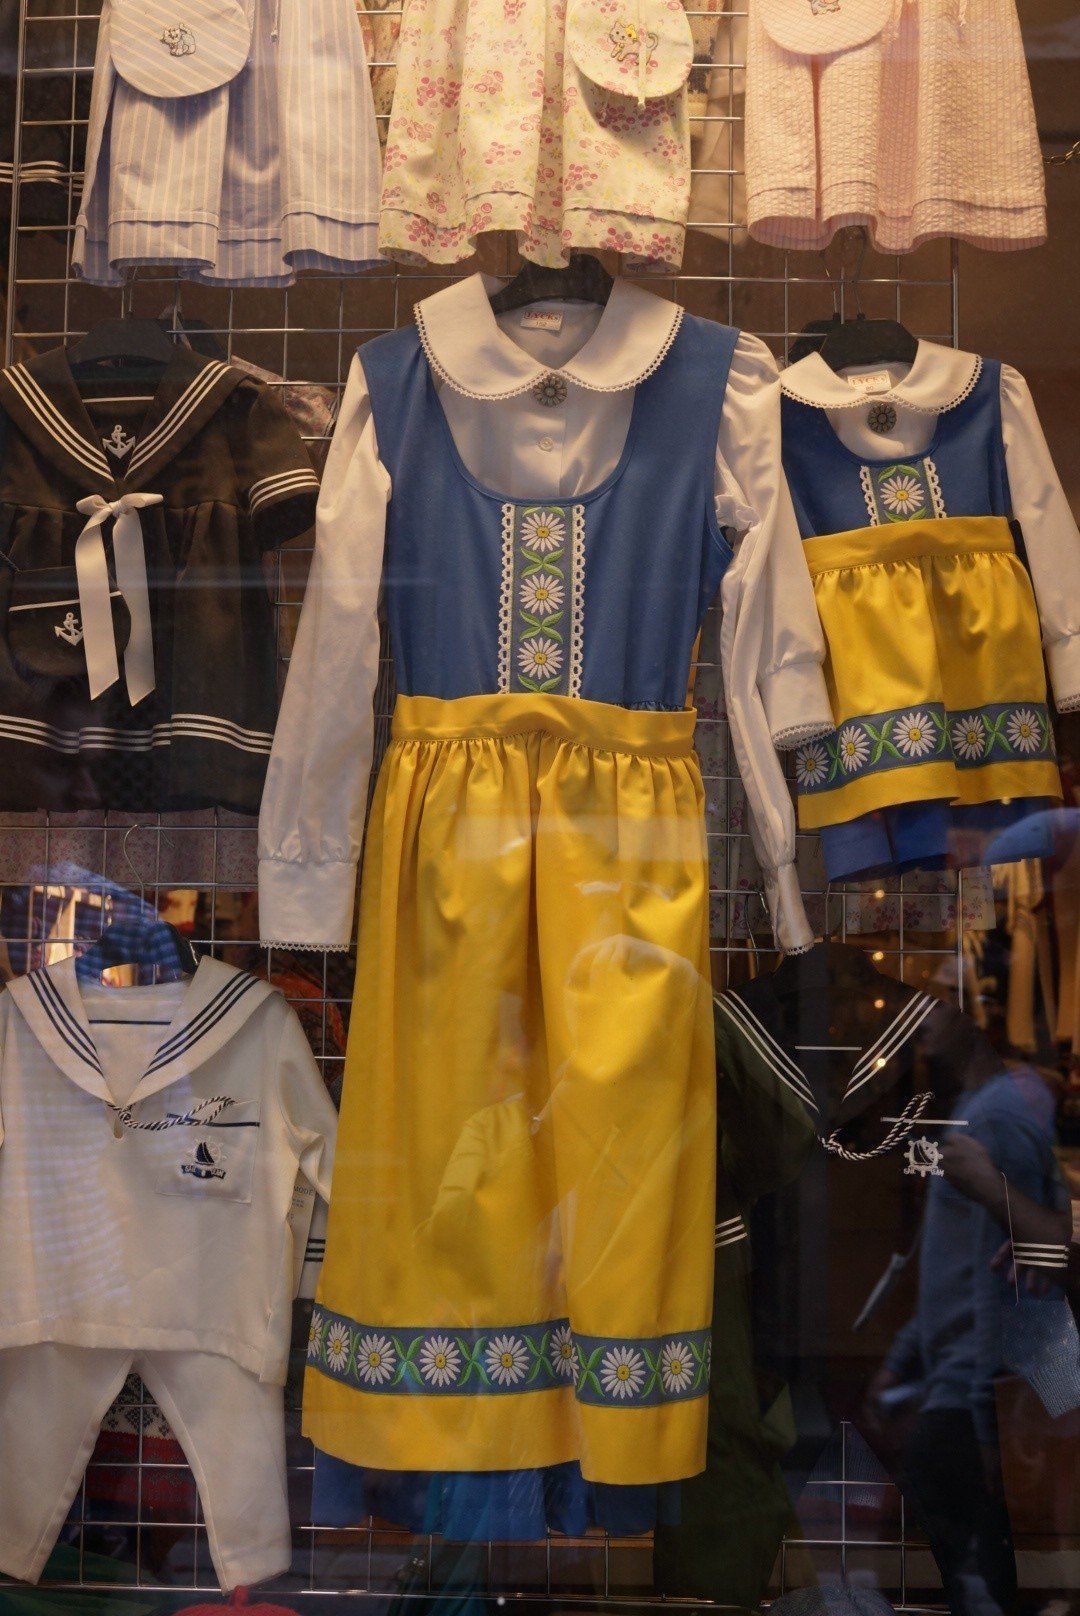 スウェーデンの民族衣装的な 可愛い色 国旗と同じ配色のブルーと黄色 お花の可愛らしいデザインが北欧 っぽくて イベントでなくてもちょっと着てみたい Misa Note